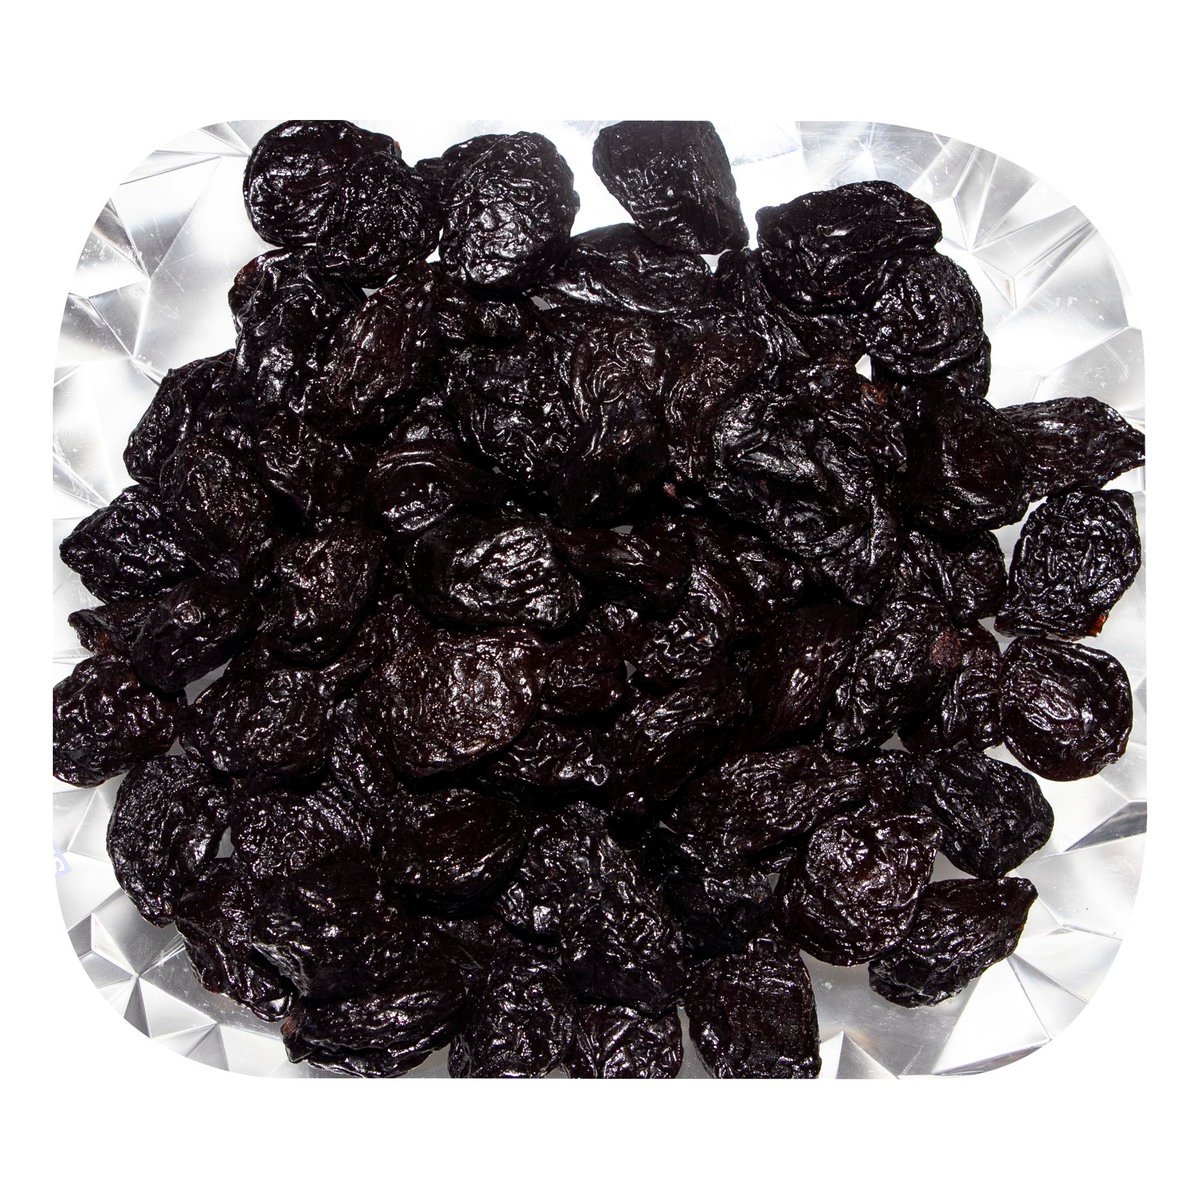 اشتري قم بشراء برقوق 500 جم Online at Best Price من الموقع - من لولو هايبر ماركت Roastery Dried Fruit في السعودية